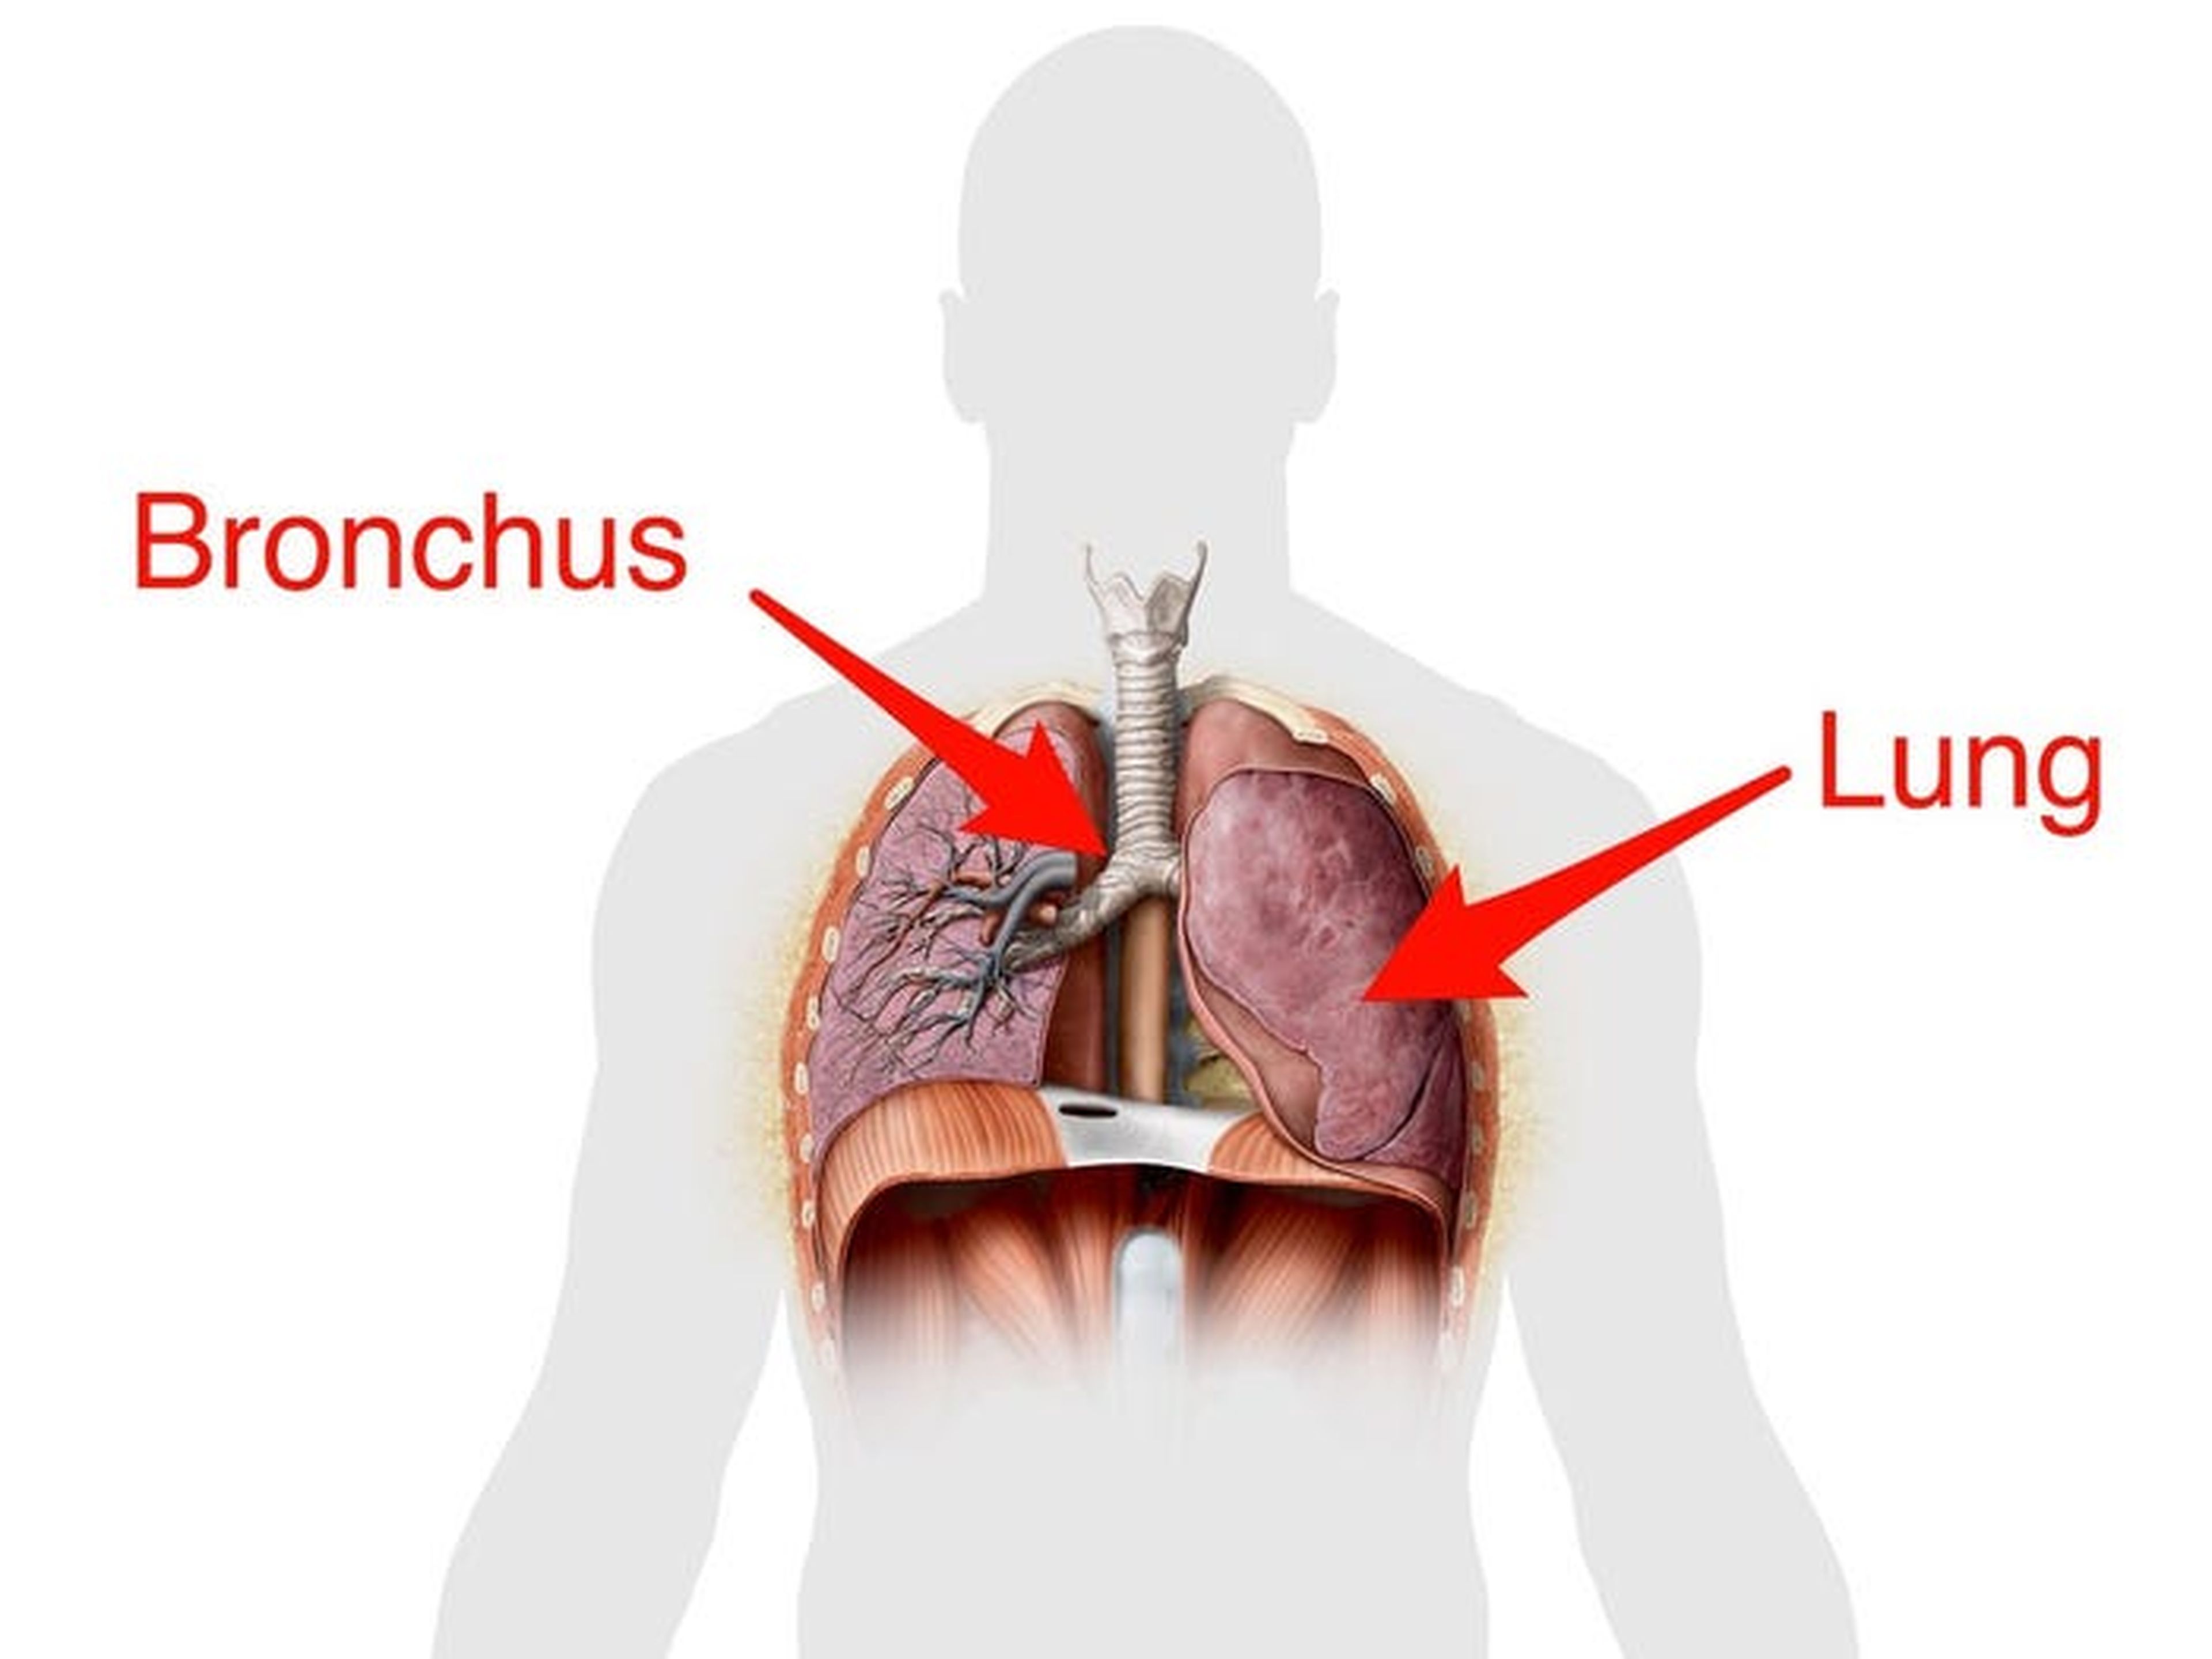 Esquema de la ubicación de los bronquios ("bronchus") y el pulmón ("lung") en el cuerpo humano.